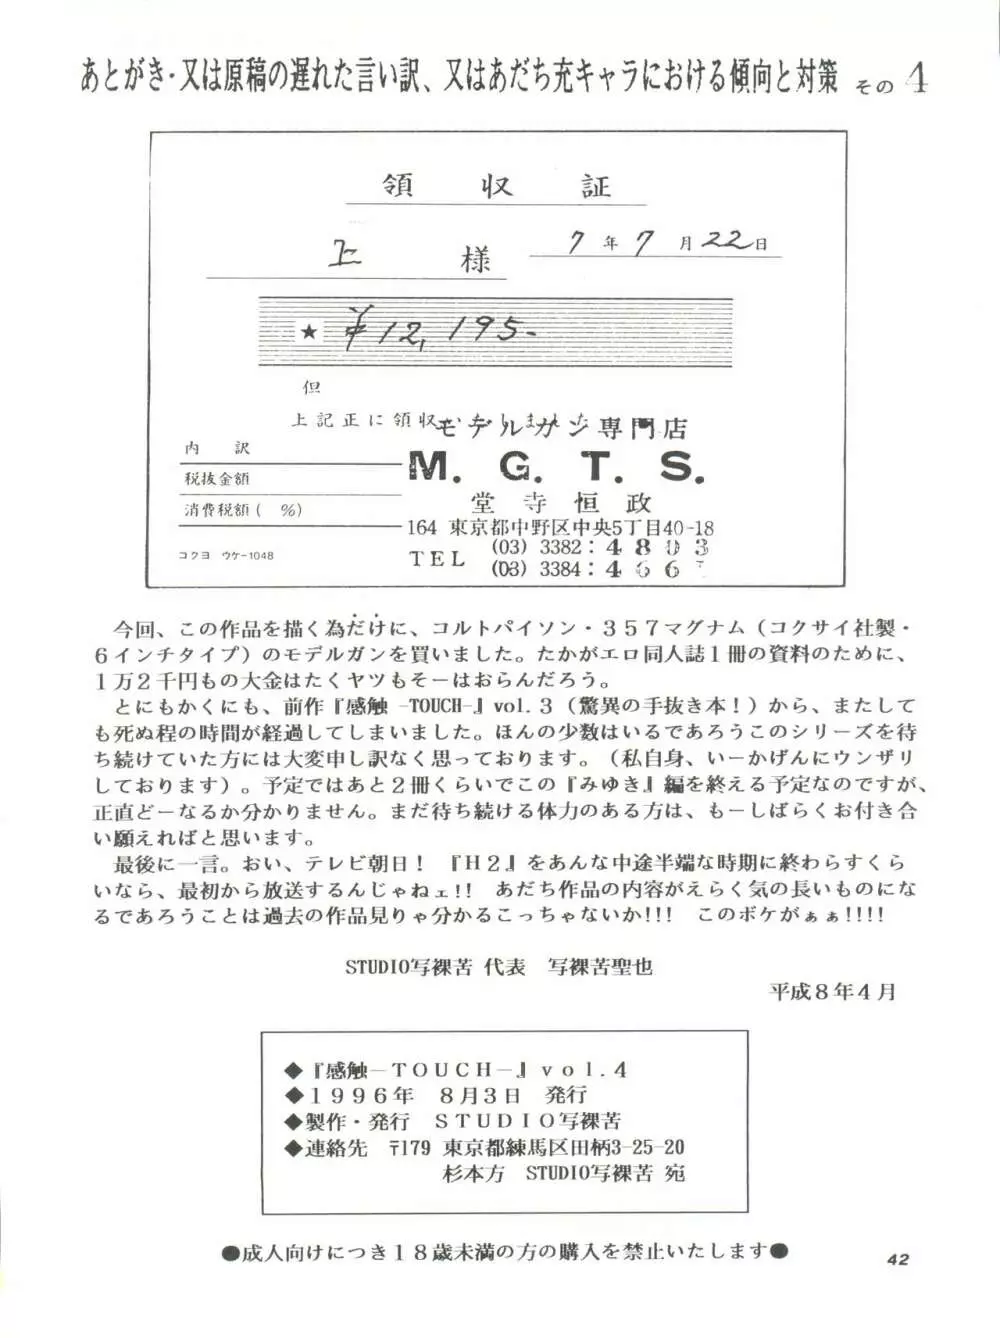 [STUDIO写裸苦 (写裸苦聖也)] 感触 -TOUCH- vol.4 (みゆき) [1996-08-03] - page42